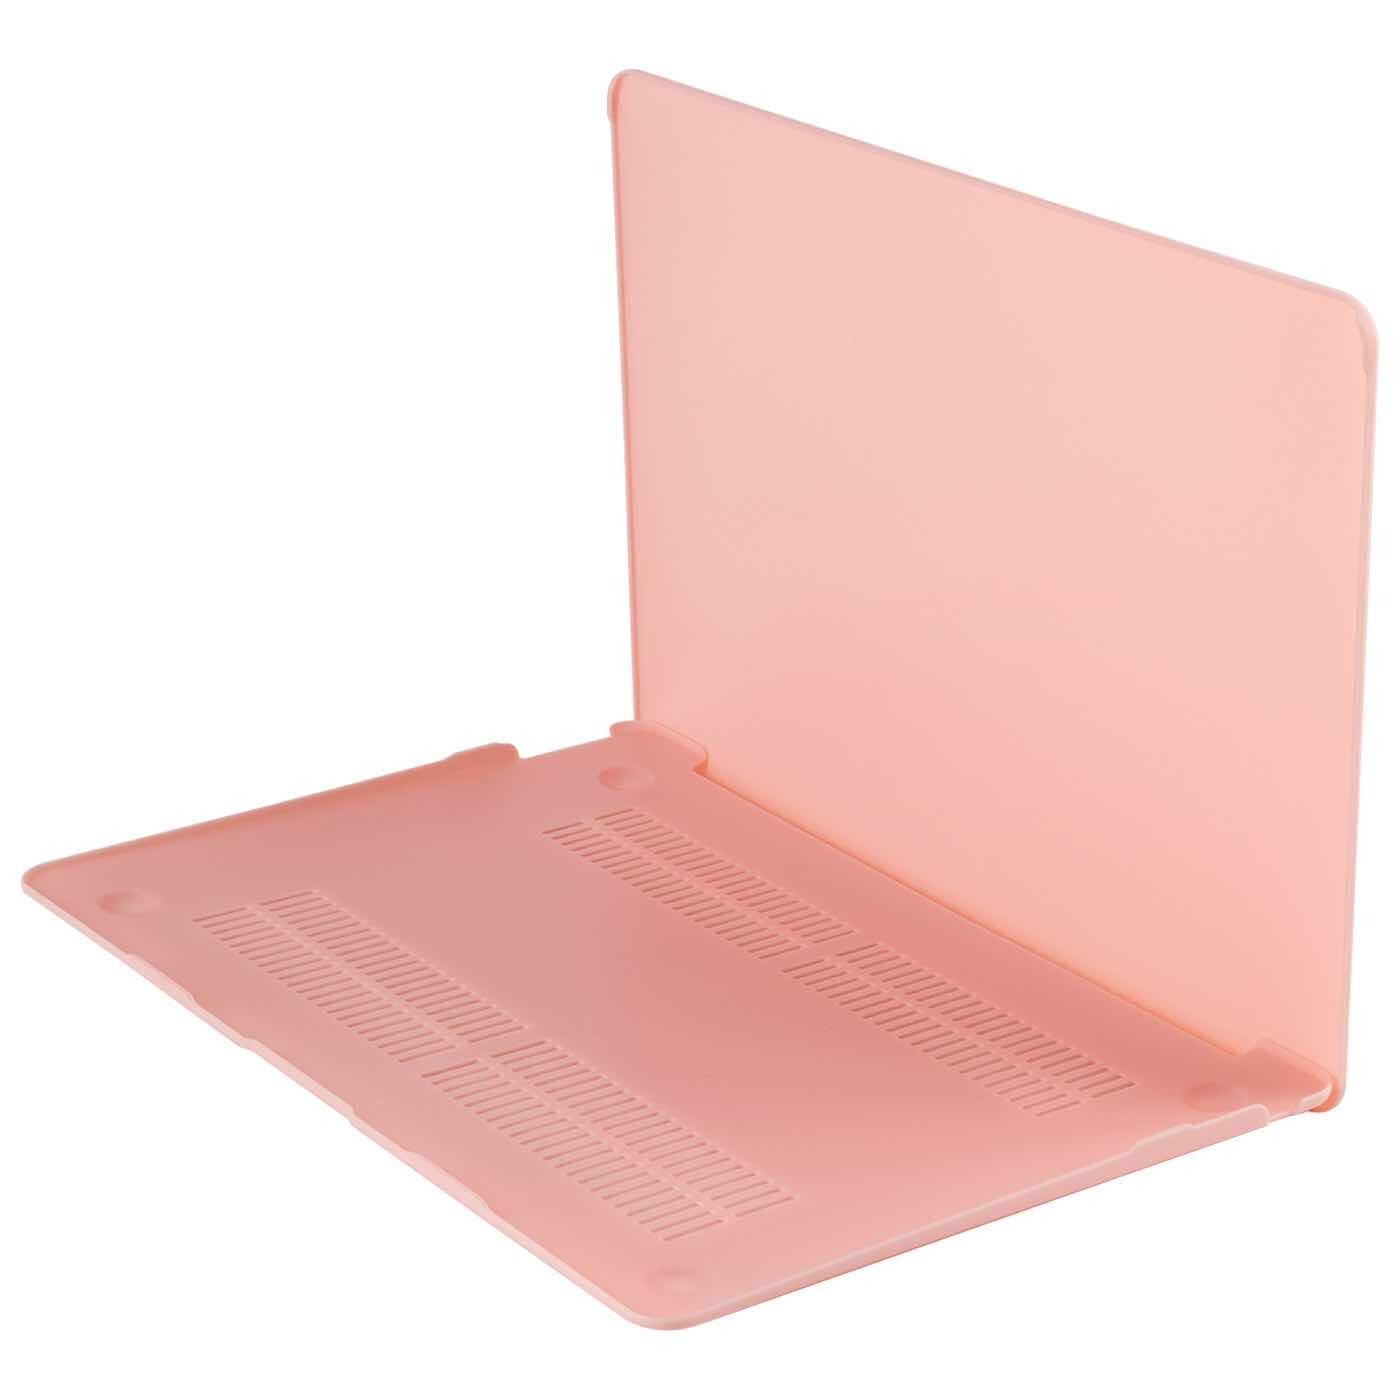 Накладка Barn & Hollis Matte Case для Macbook Air 13 розовый кварц (2018 - 2020 г.в.)